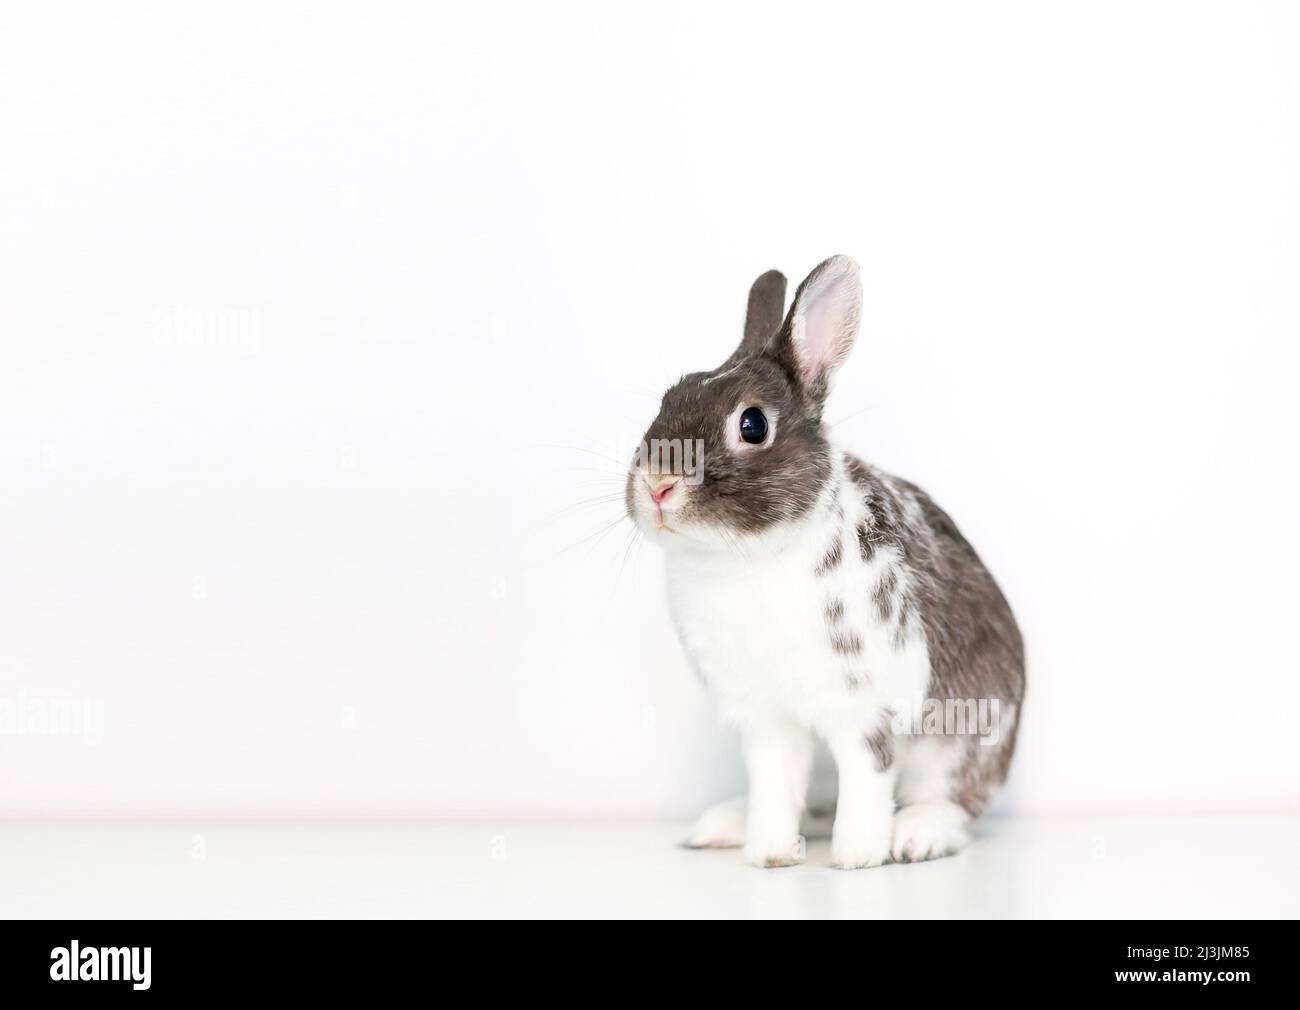 Un pequeño conejo de raza Dwarf marrón y blanco sentado sobre un fondo blanco Foto de stock